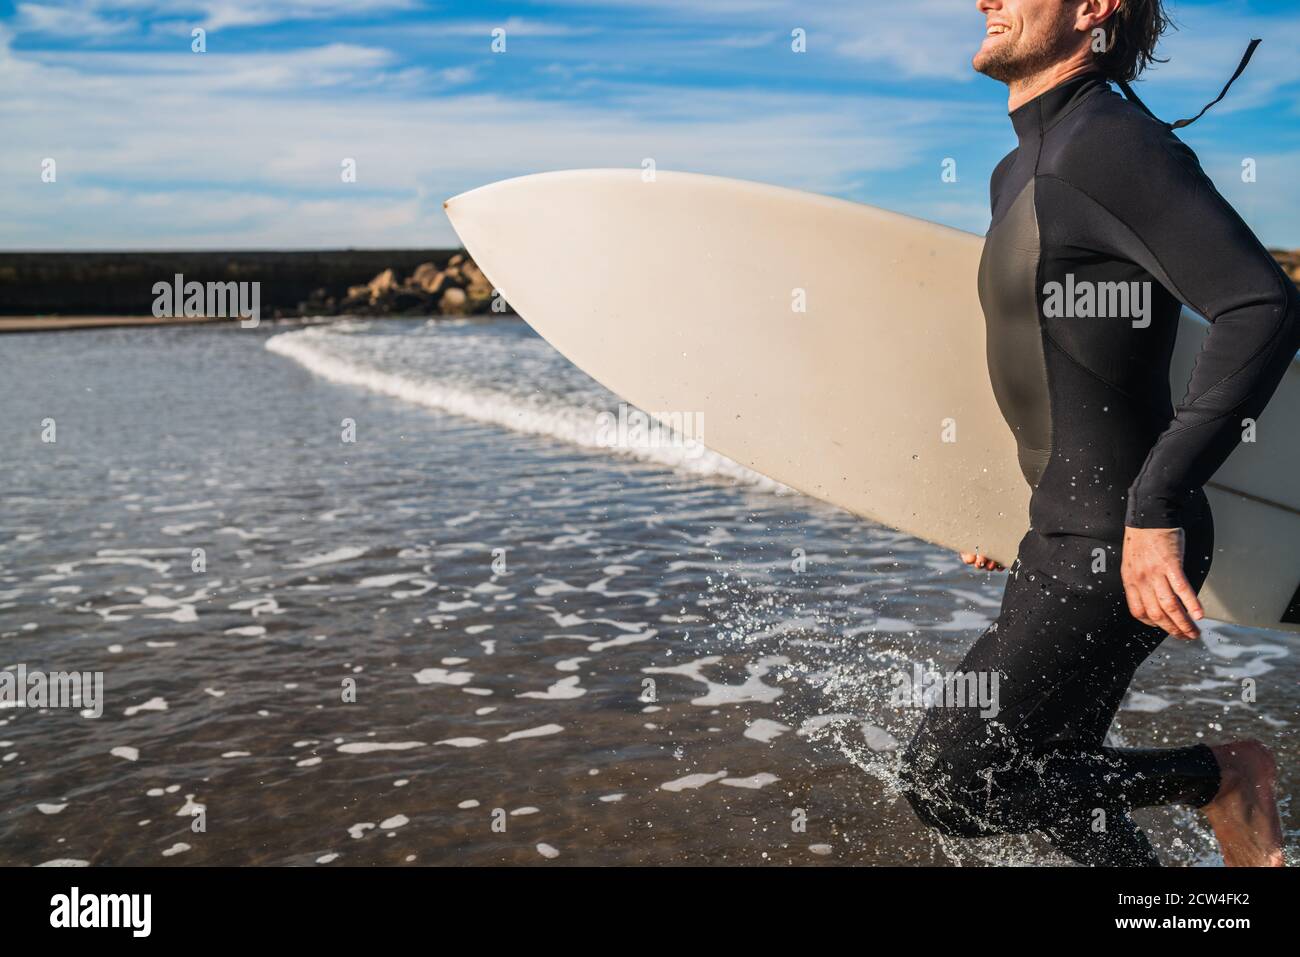 Ritratto di giovane surfista che lascia l'acqua con tavola da surf sotto il braccio. Concetto di sport e sport acquatici. Foto Stock